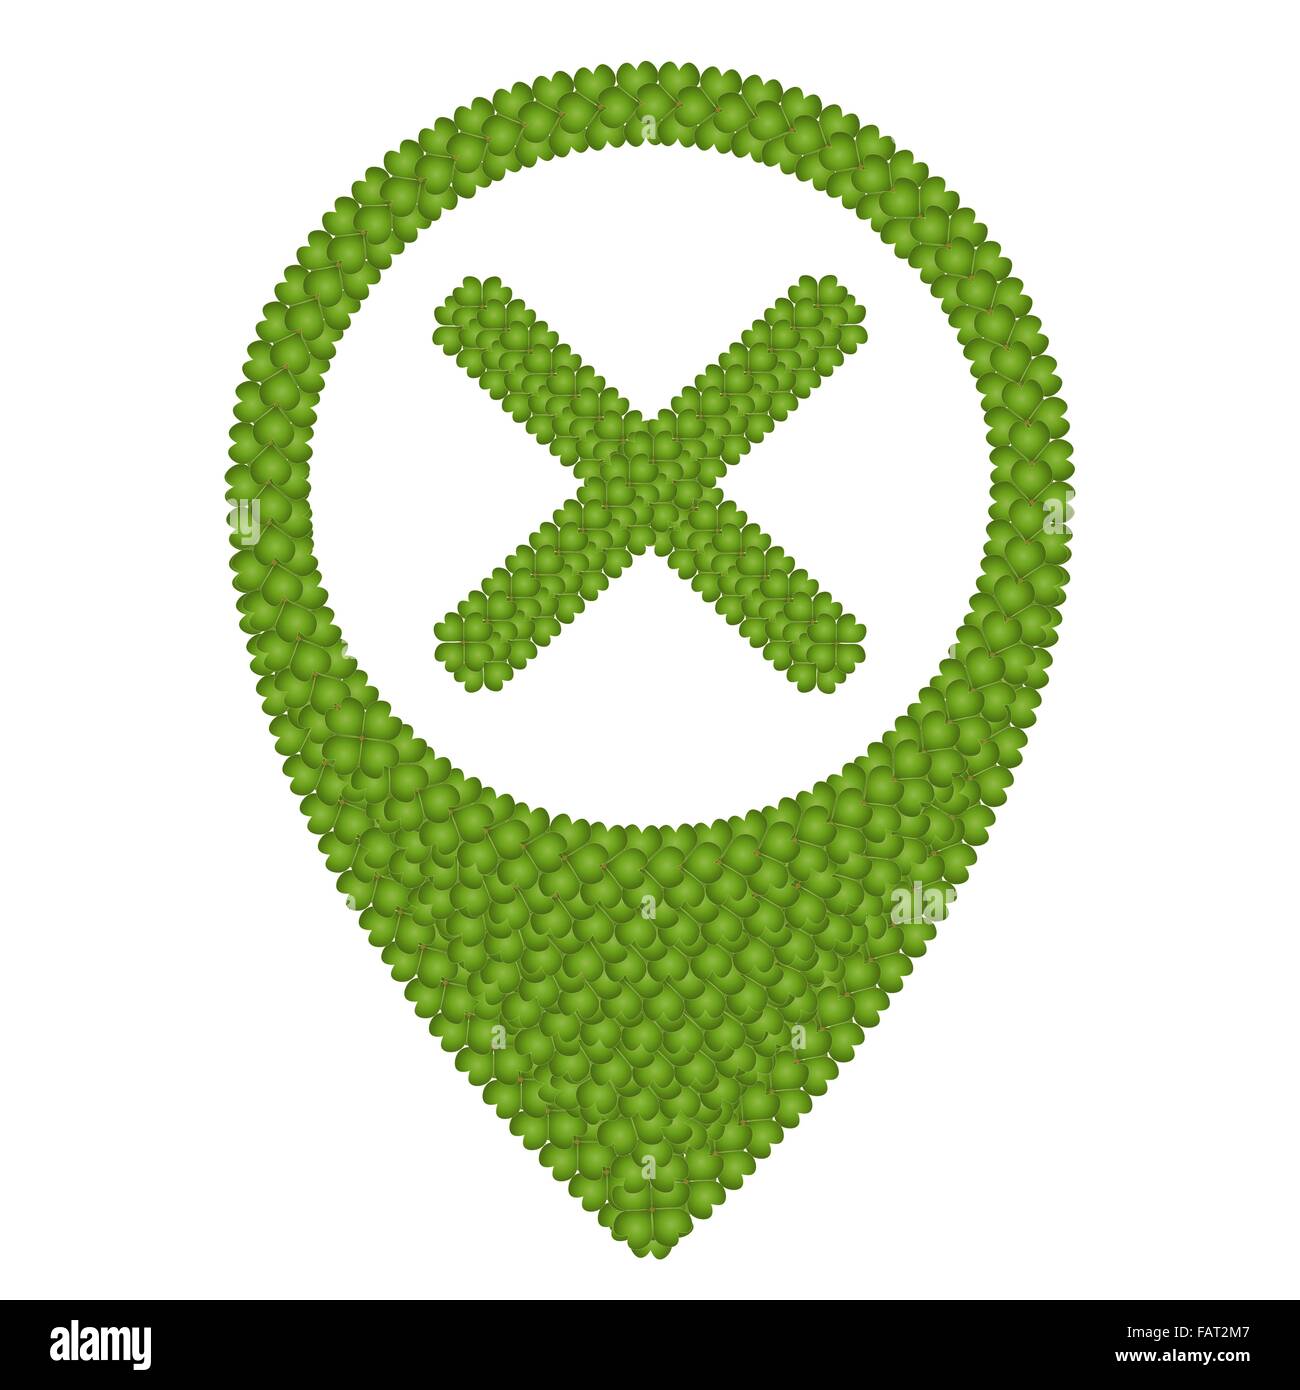 Concetto di ecologia fresco verde quattro Leaf Clover formando Mappa icona Pin o Pin dritto e X Mark, isolato su sfondo bianco Foto Stock